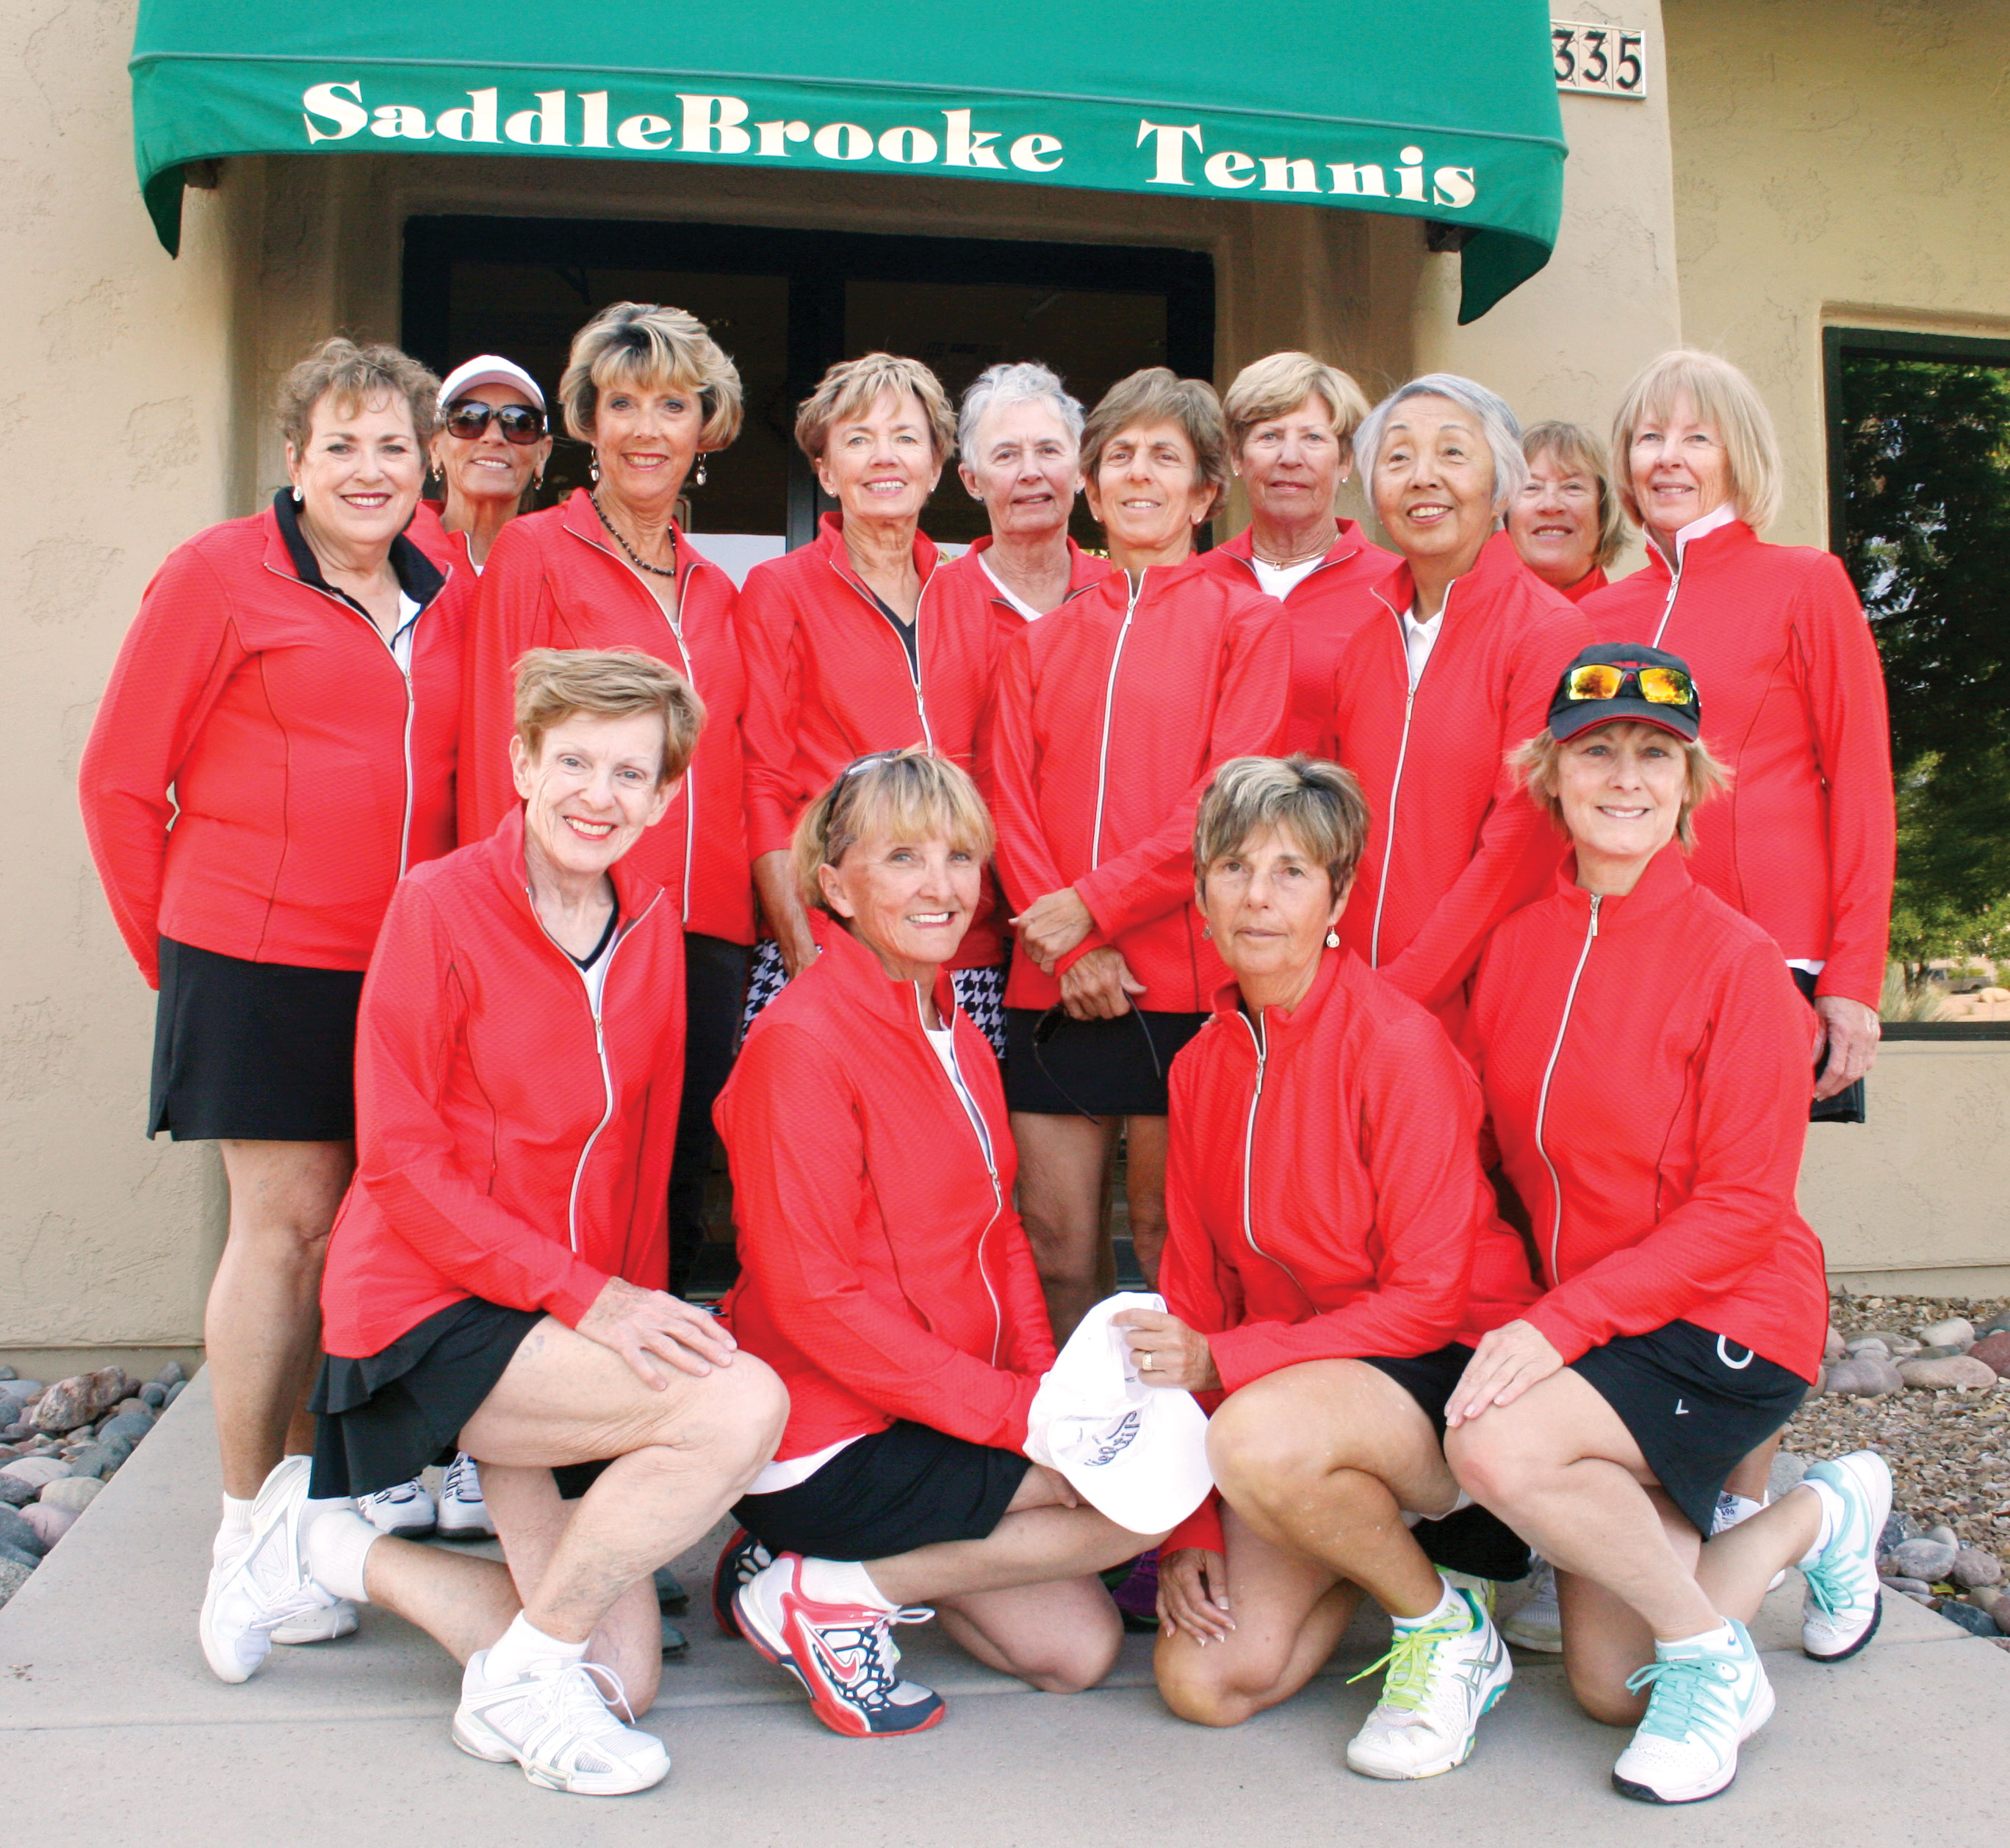 SaddleBrooke Women’s 7.0 Team